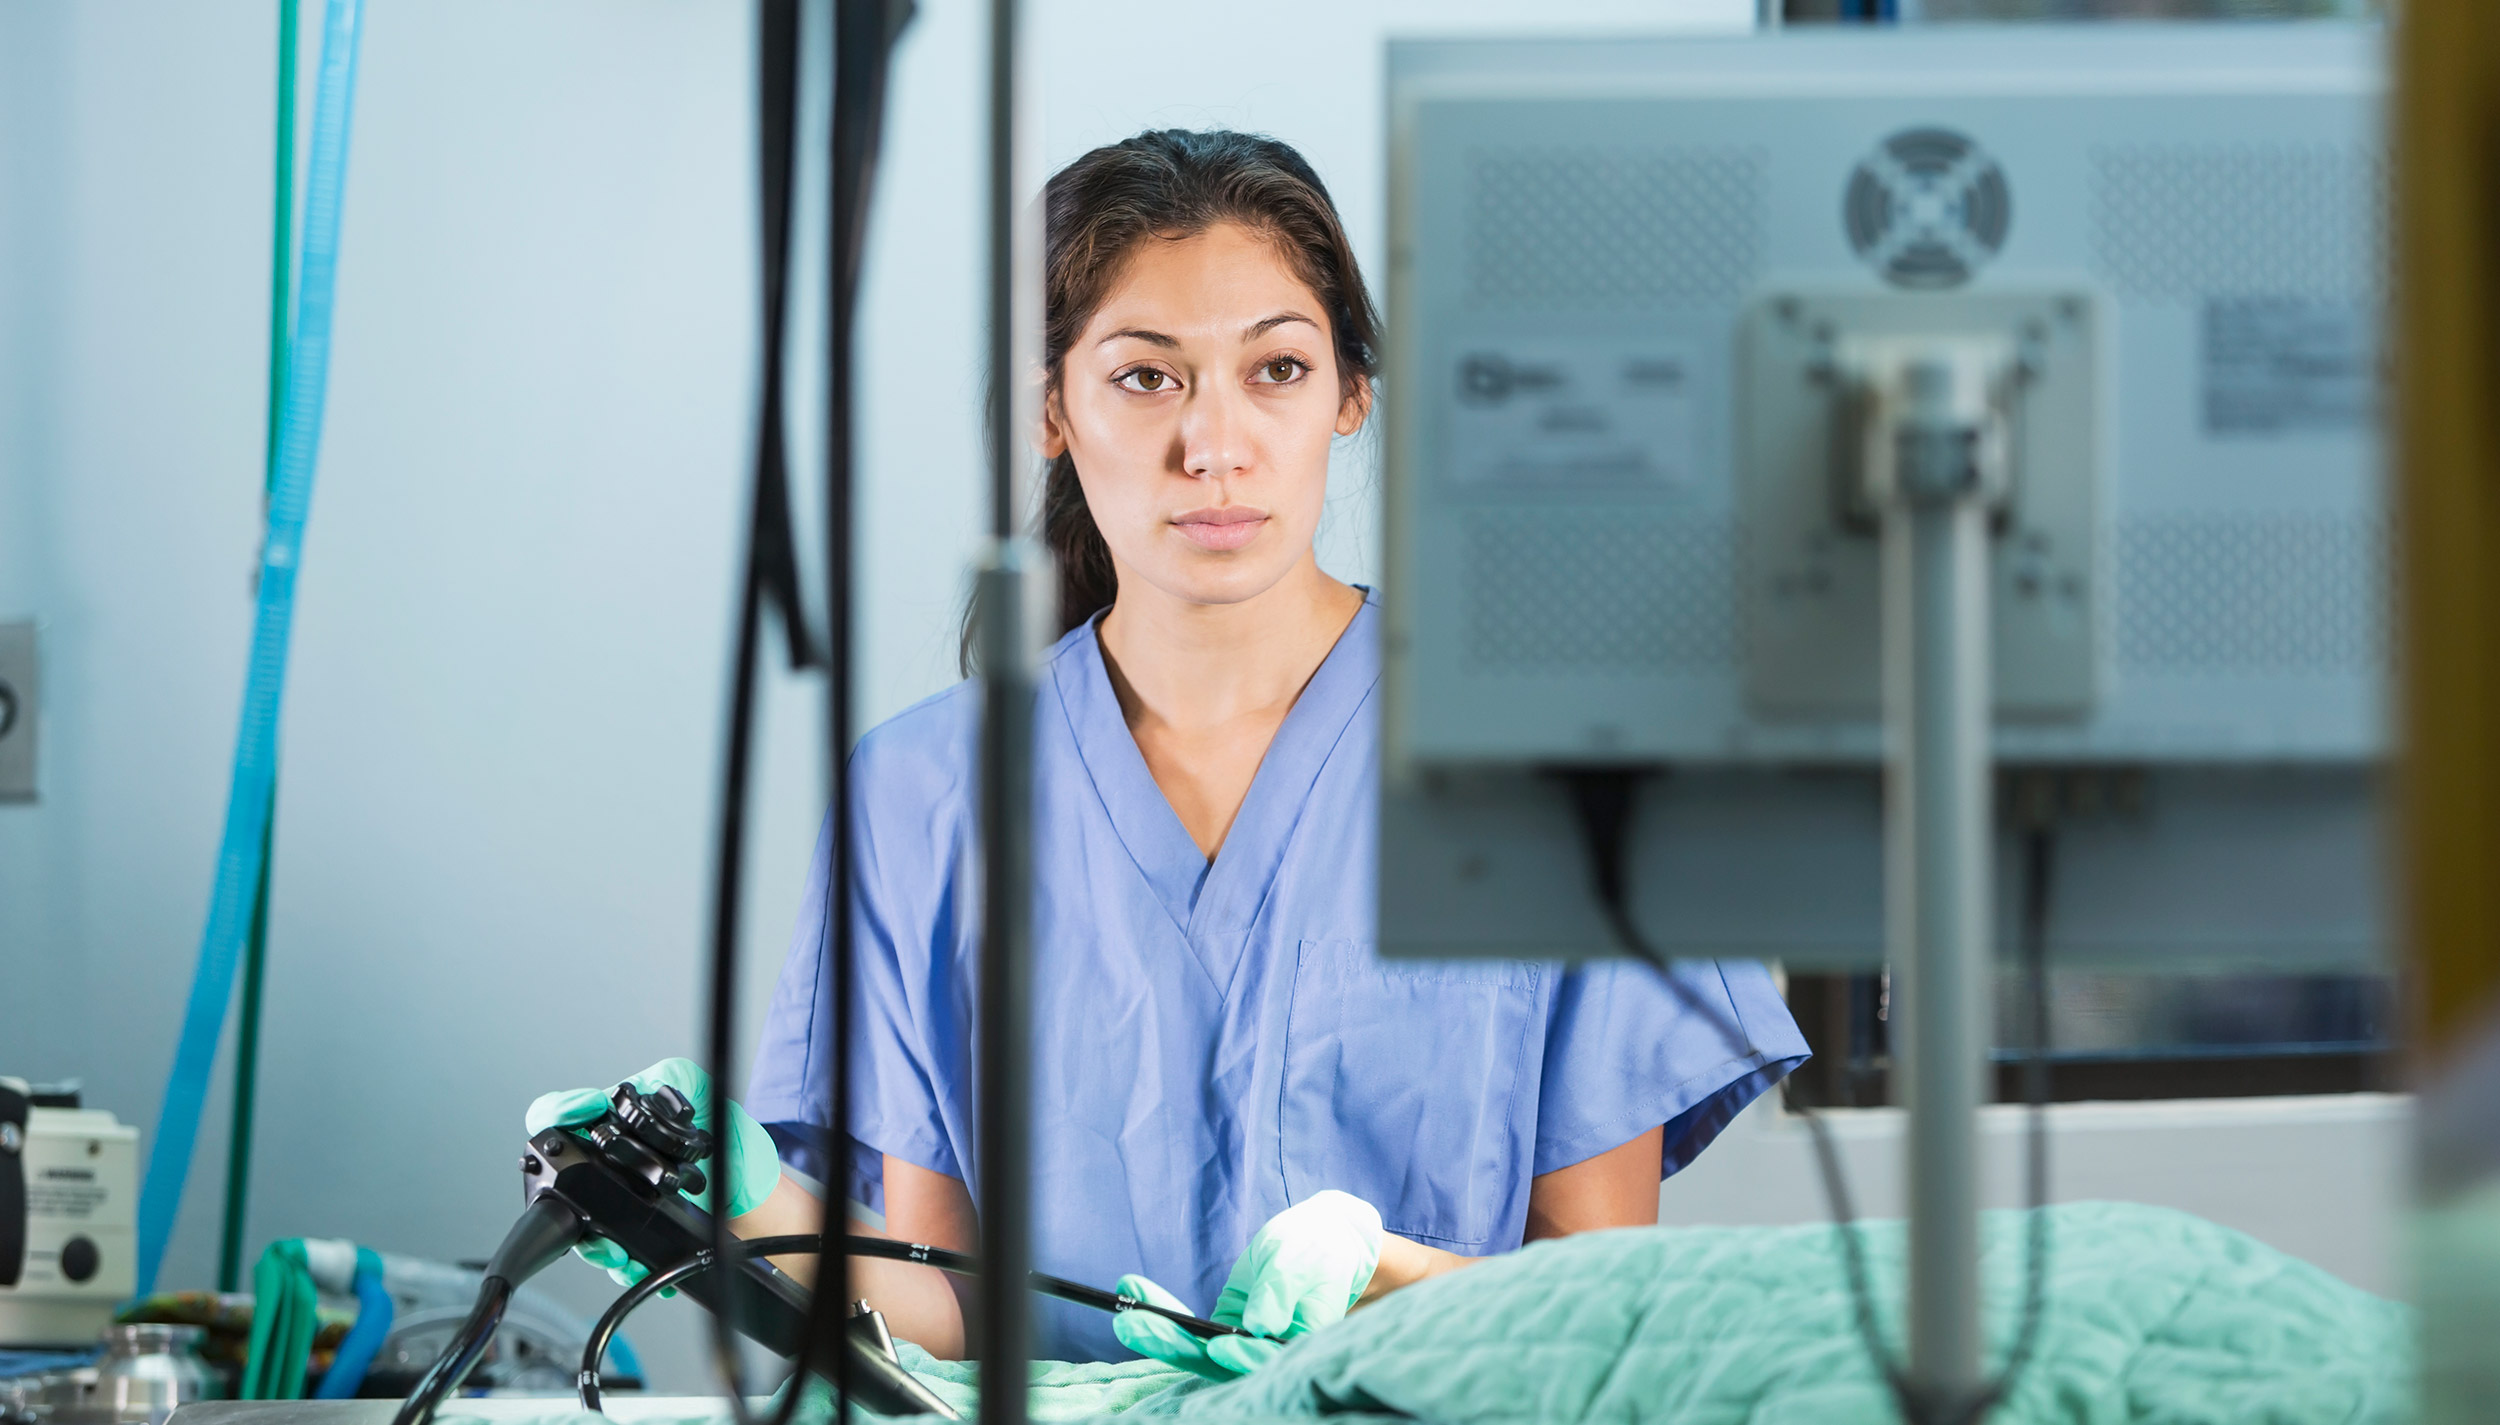 Women face unique ergonomic challenges in endoscopy.